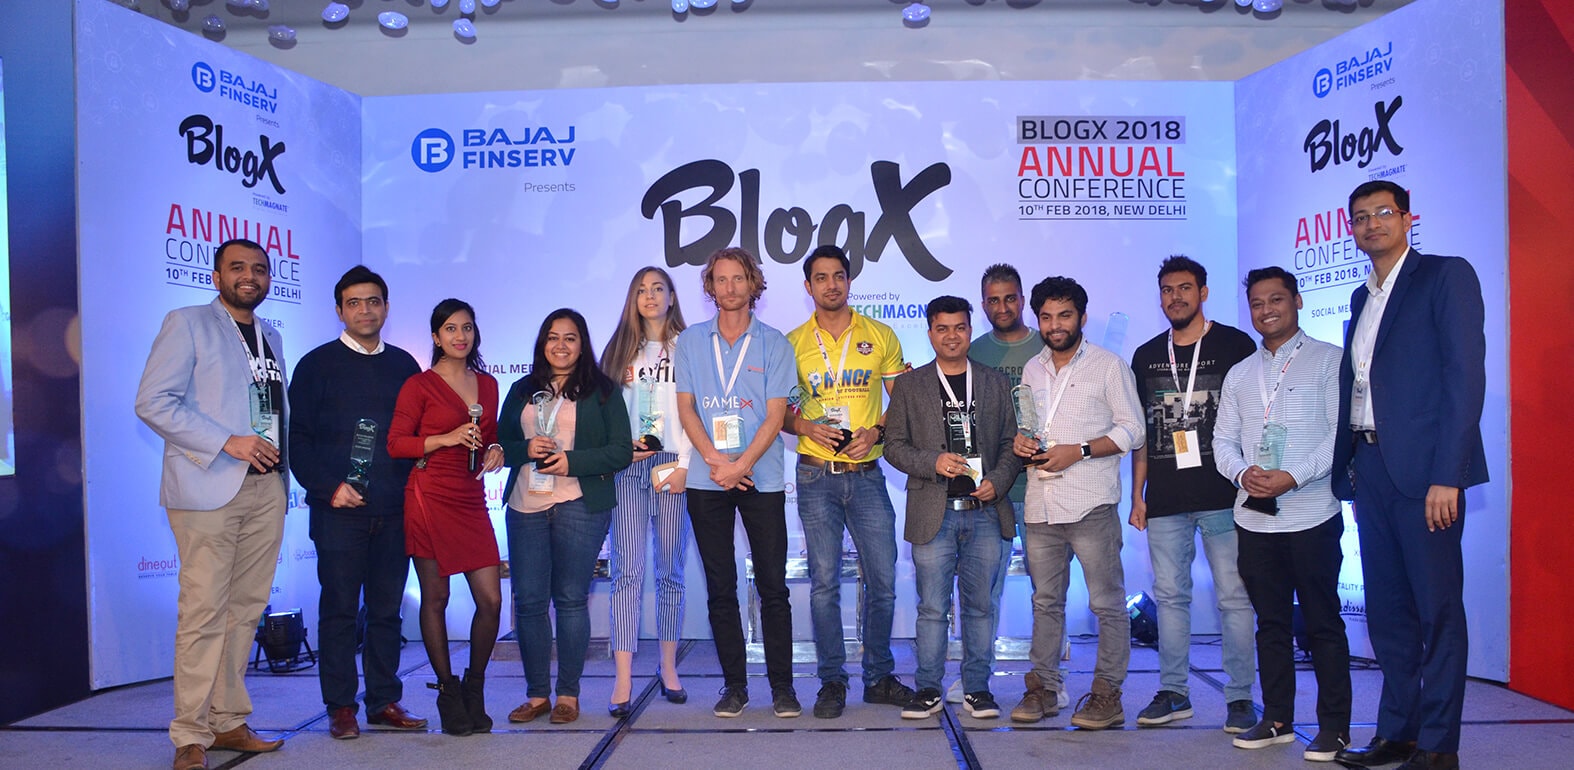 BLOGX 2019 CONFERENCE, New Delhi, Delhi, India